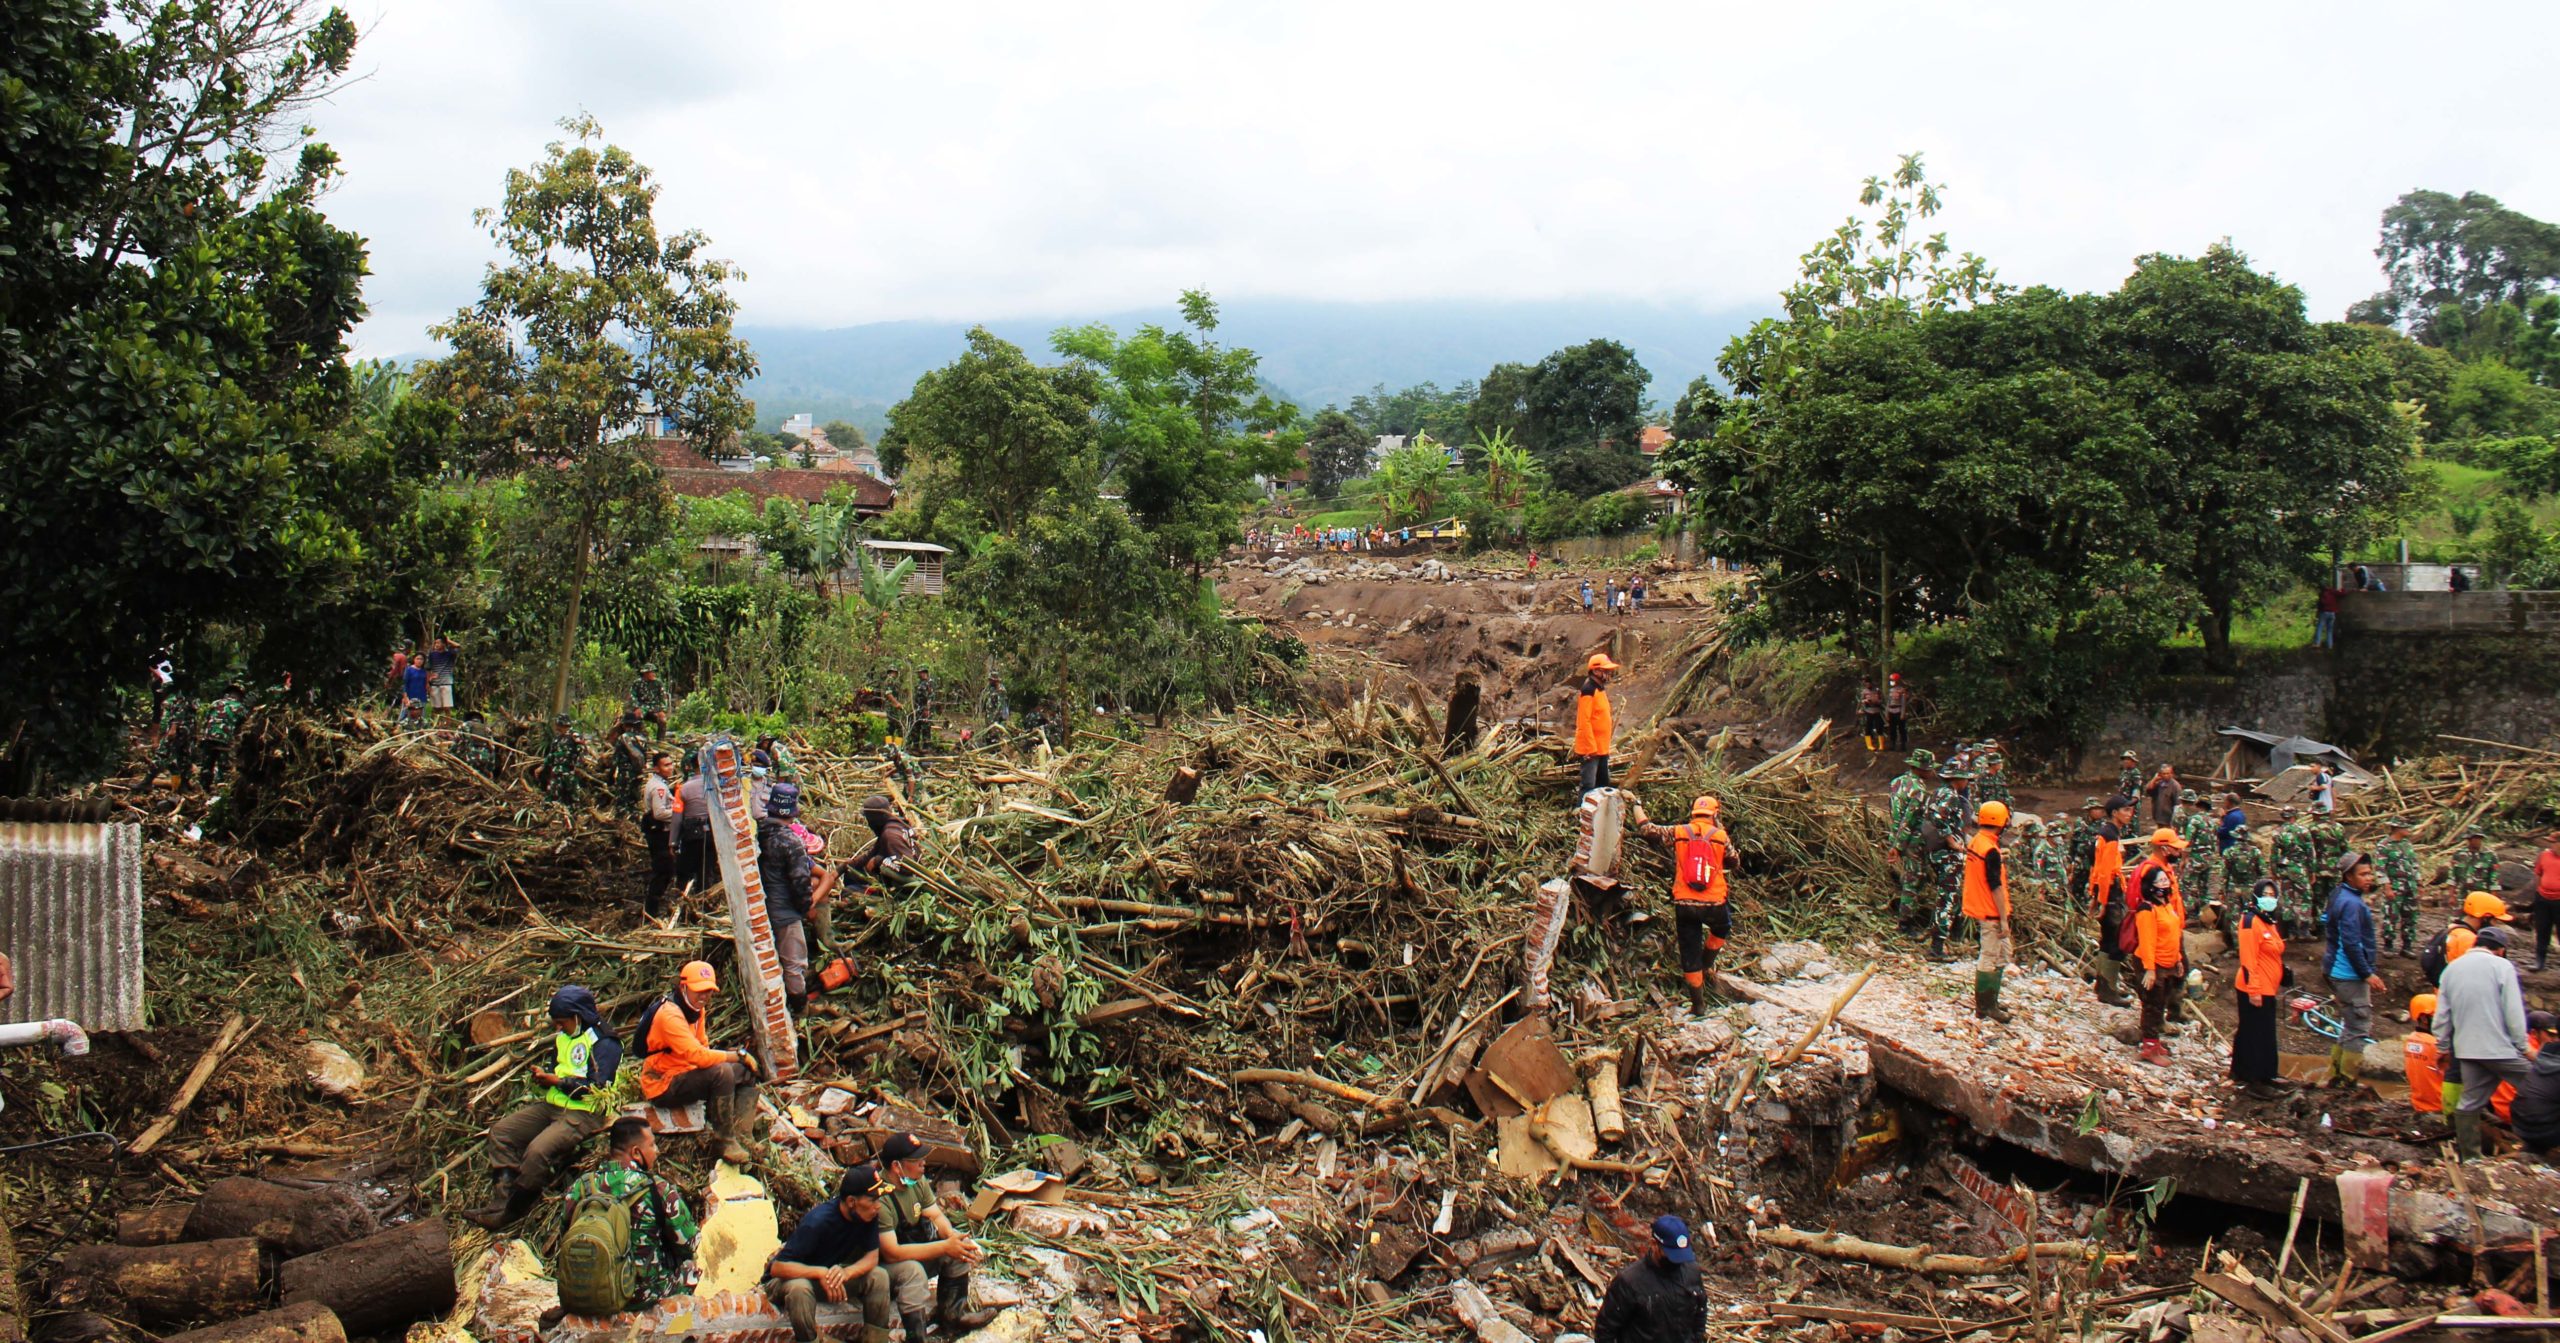 Rumah warga di Batu, rata dengan tanah kena terjang banjir bandang. Foto: Eko Widianto/ Mongabay Indonesia